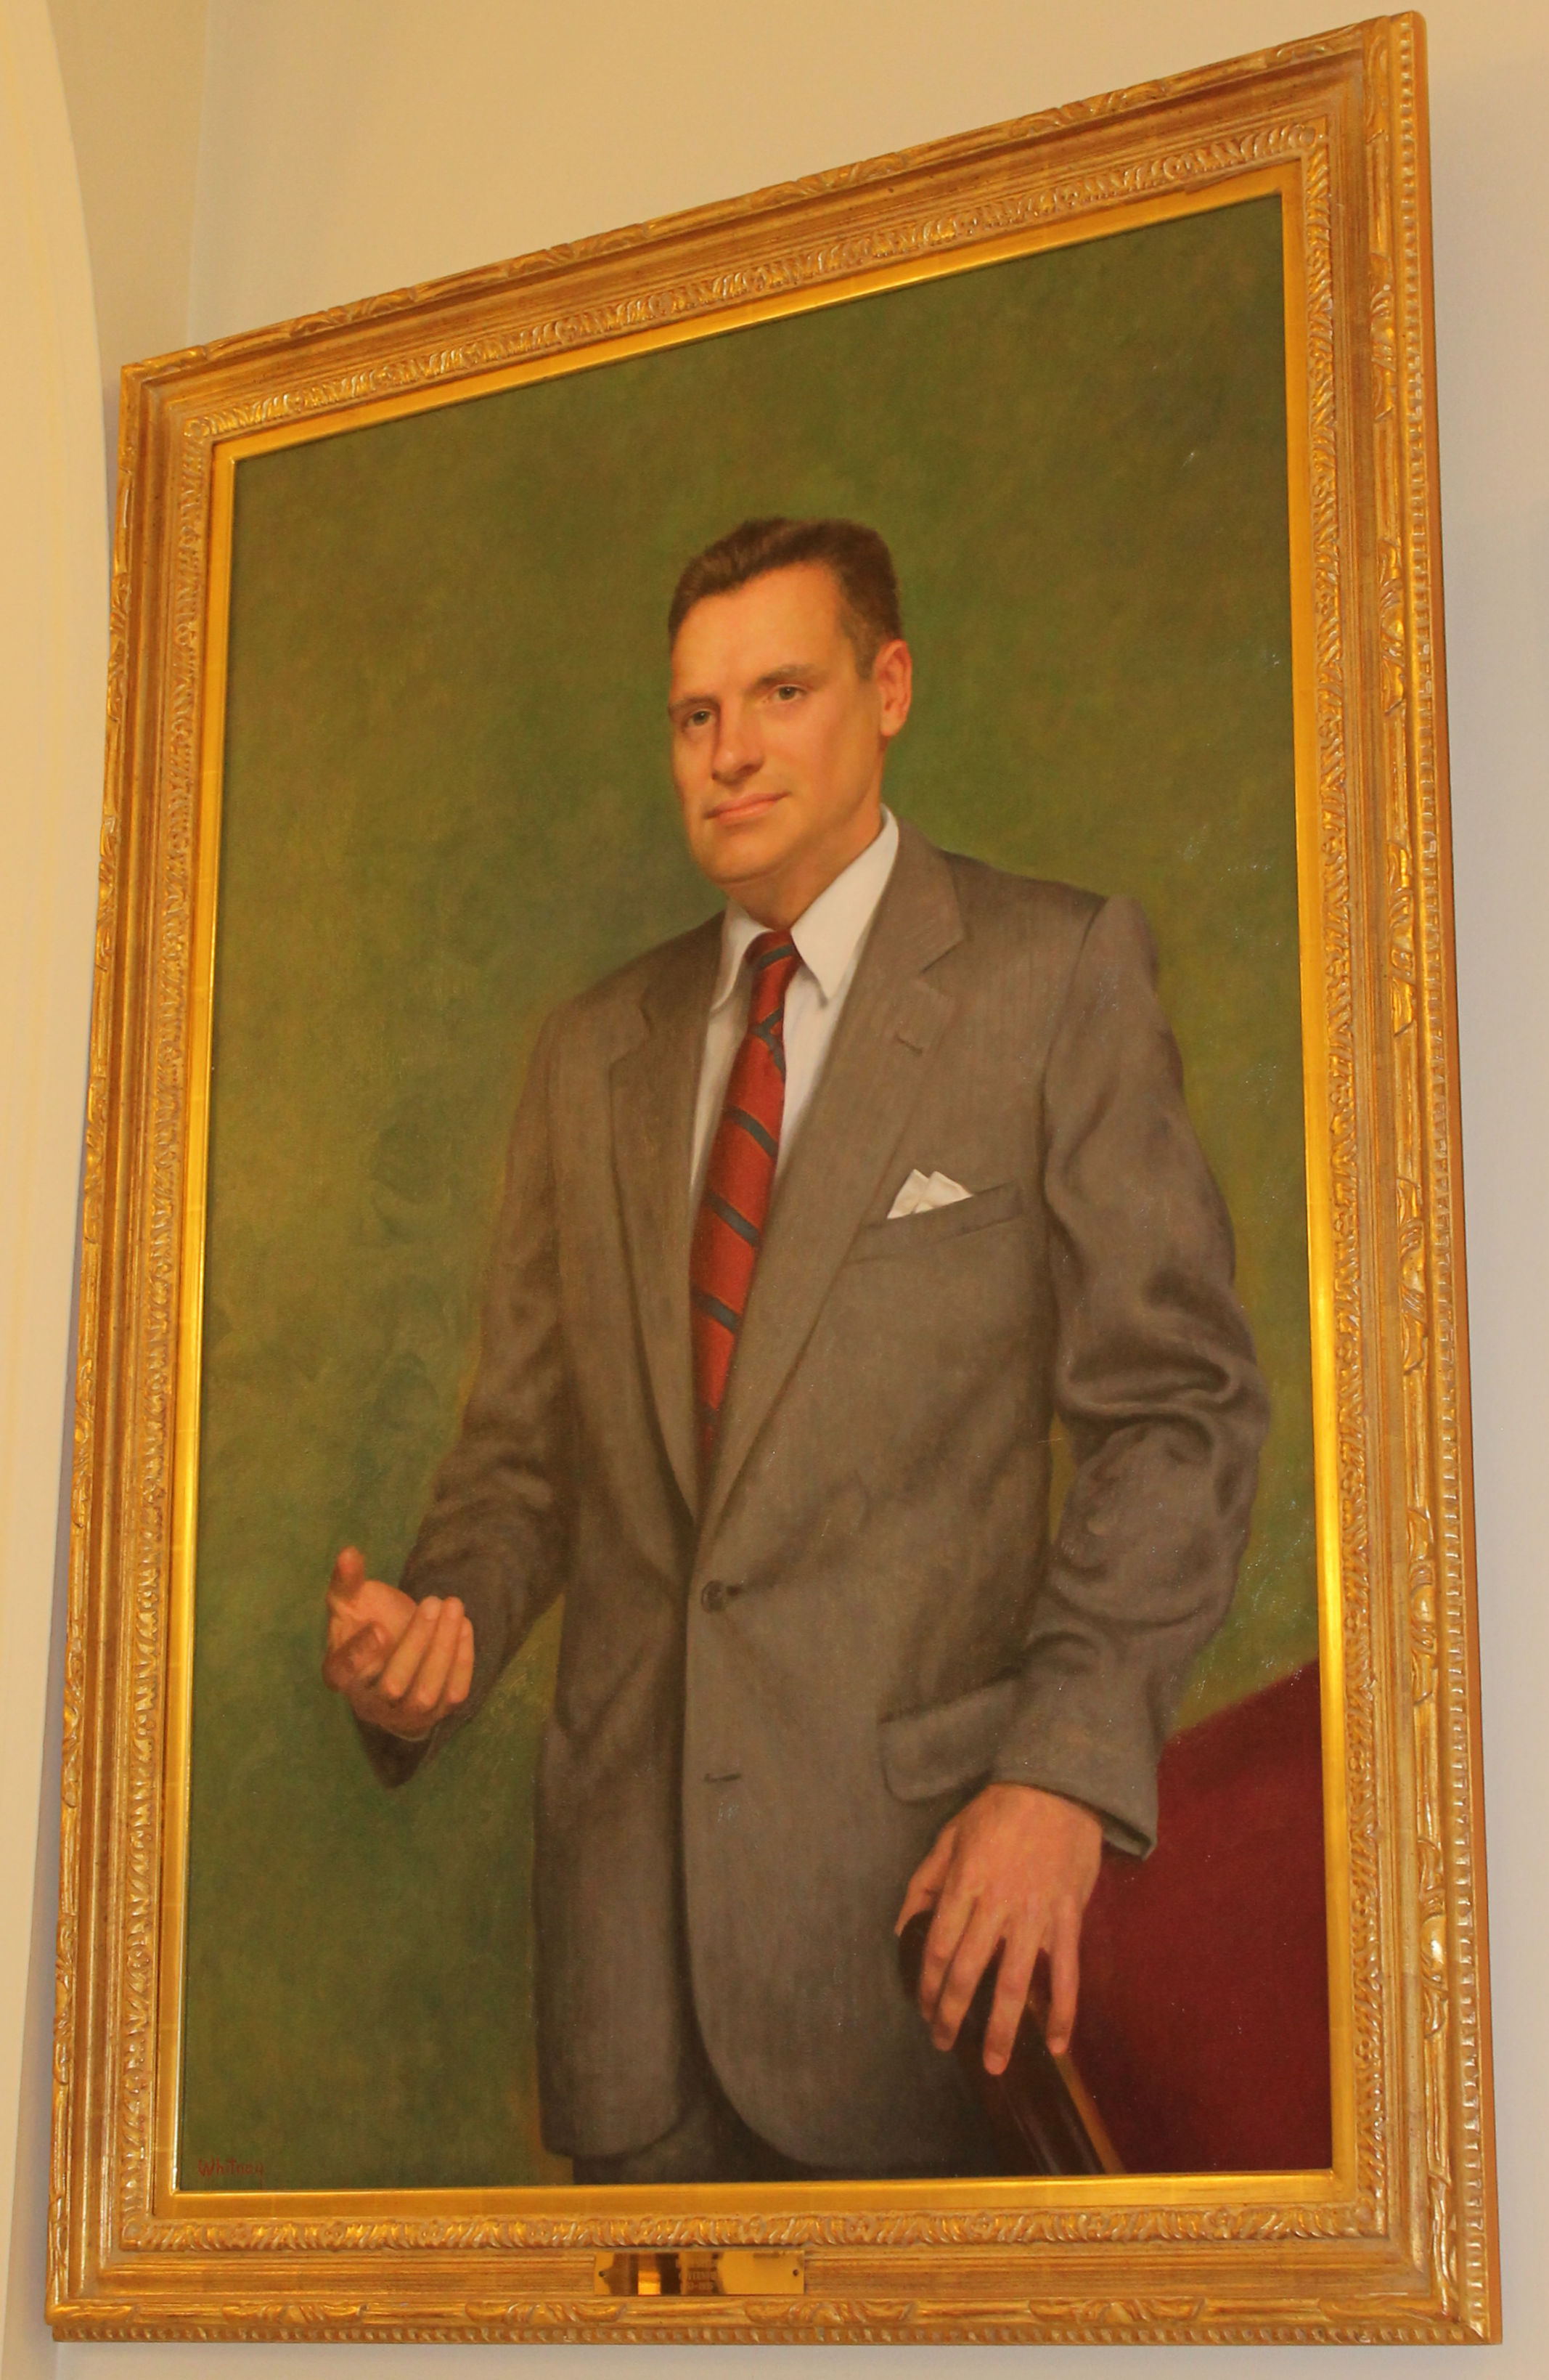 Hugh Gregg, New Hampshire Governor